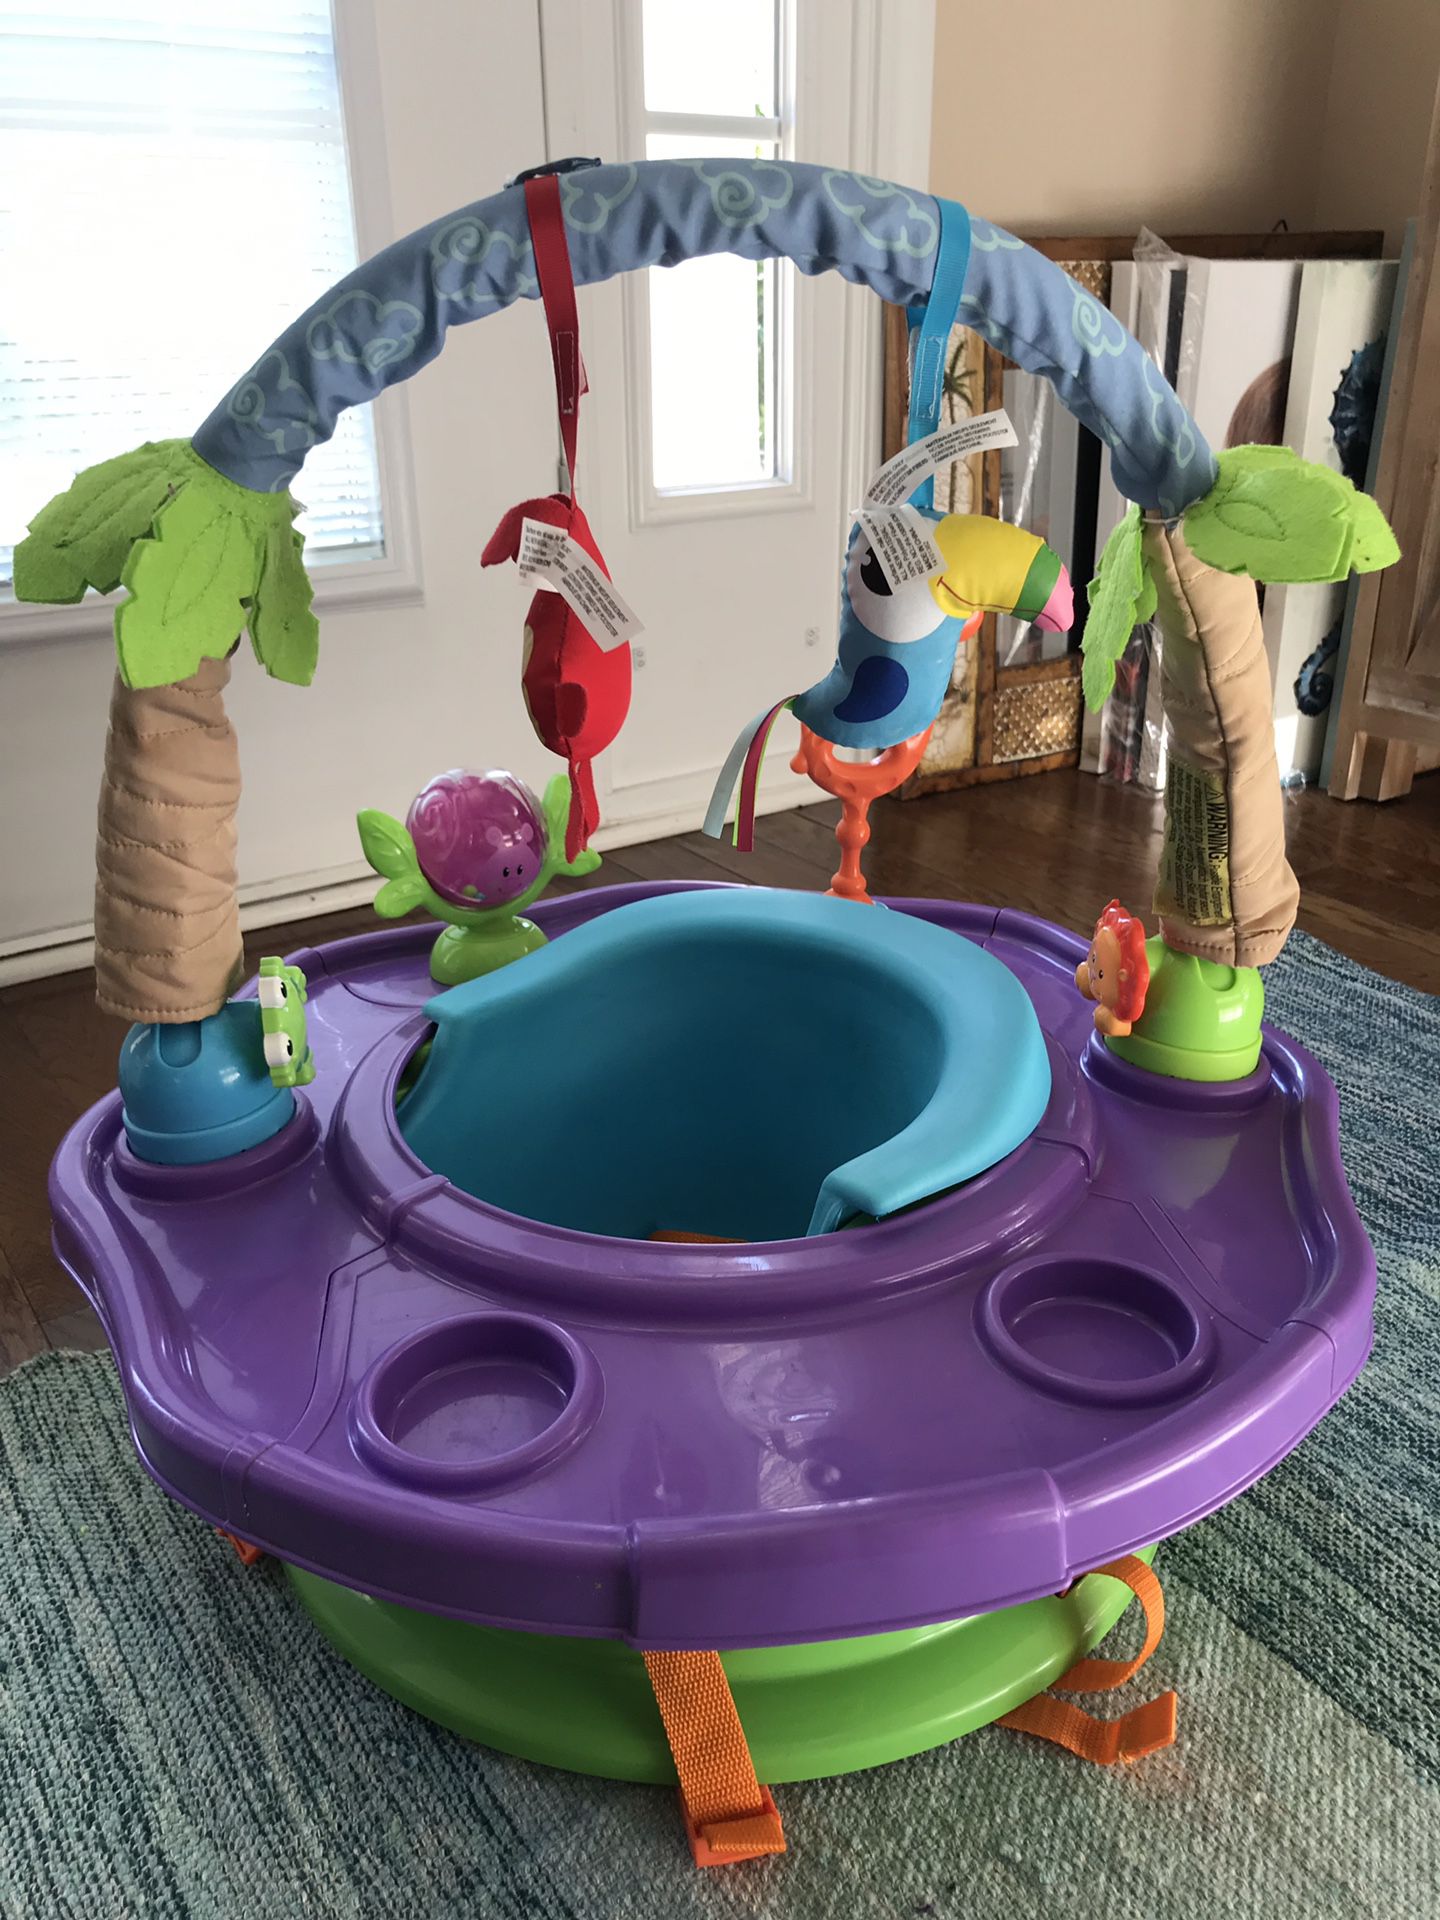 Baby activity seat